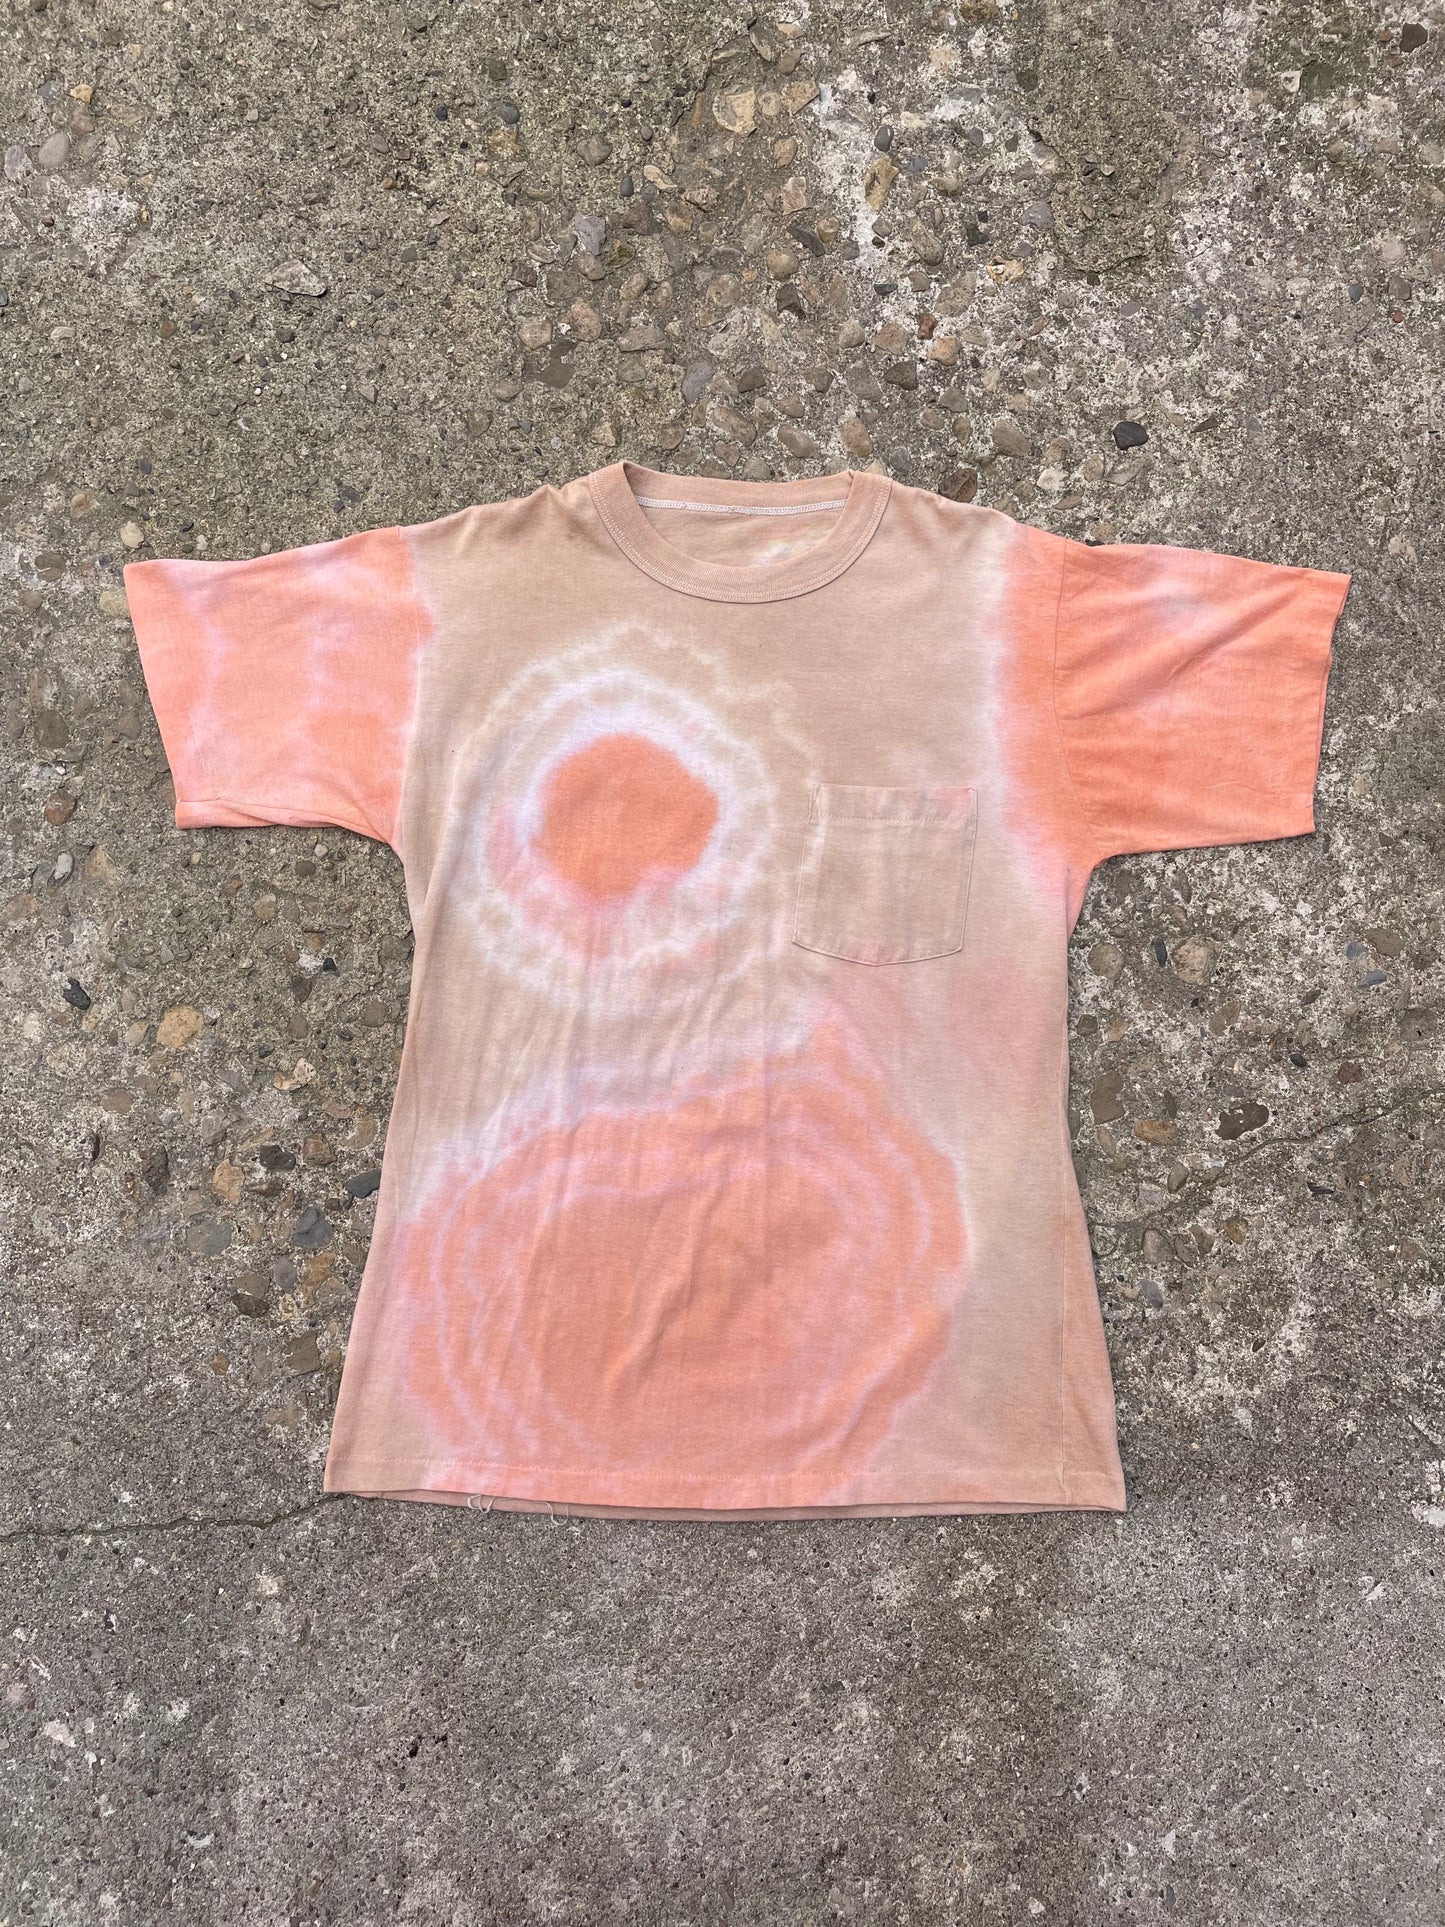 1980's Tie Dye Pocket T-Shirt - L